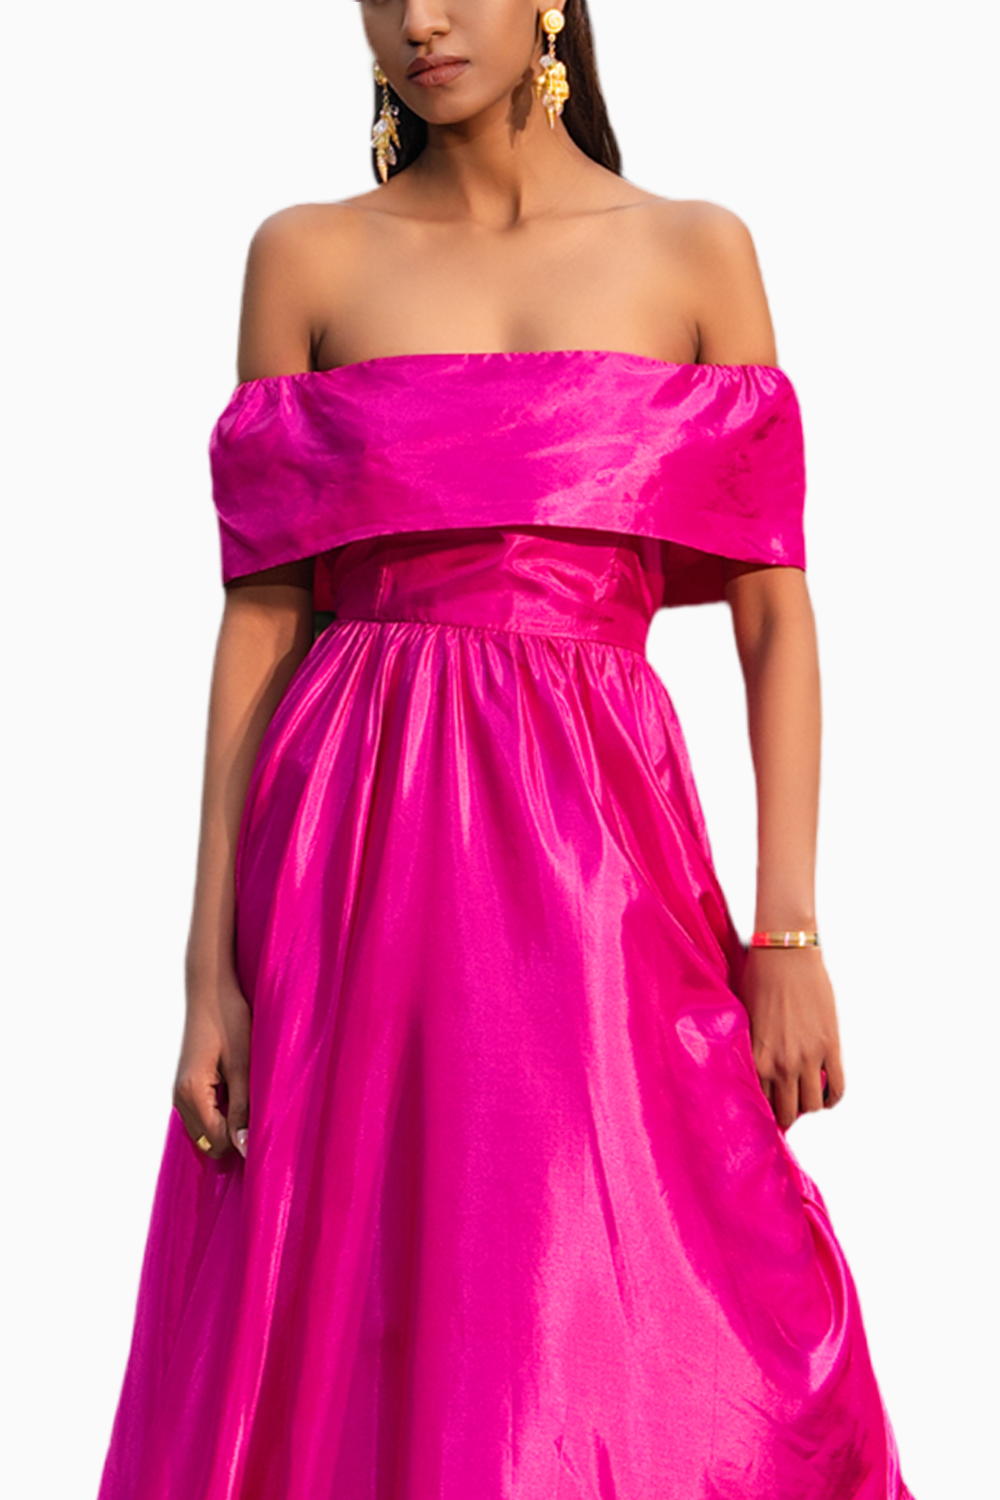 Mirage Fuchsia Pink Dress